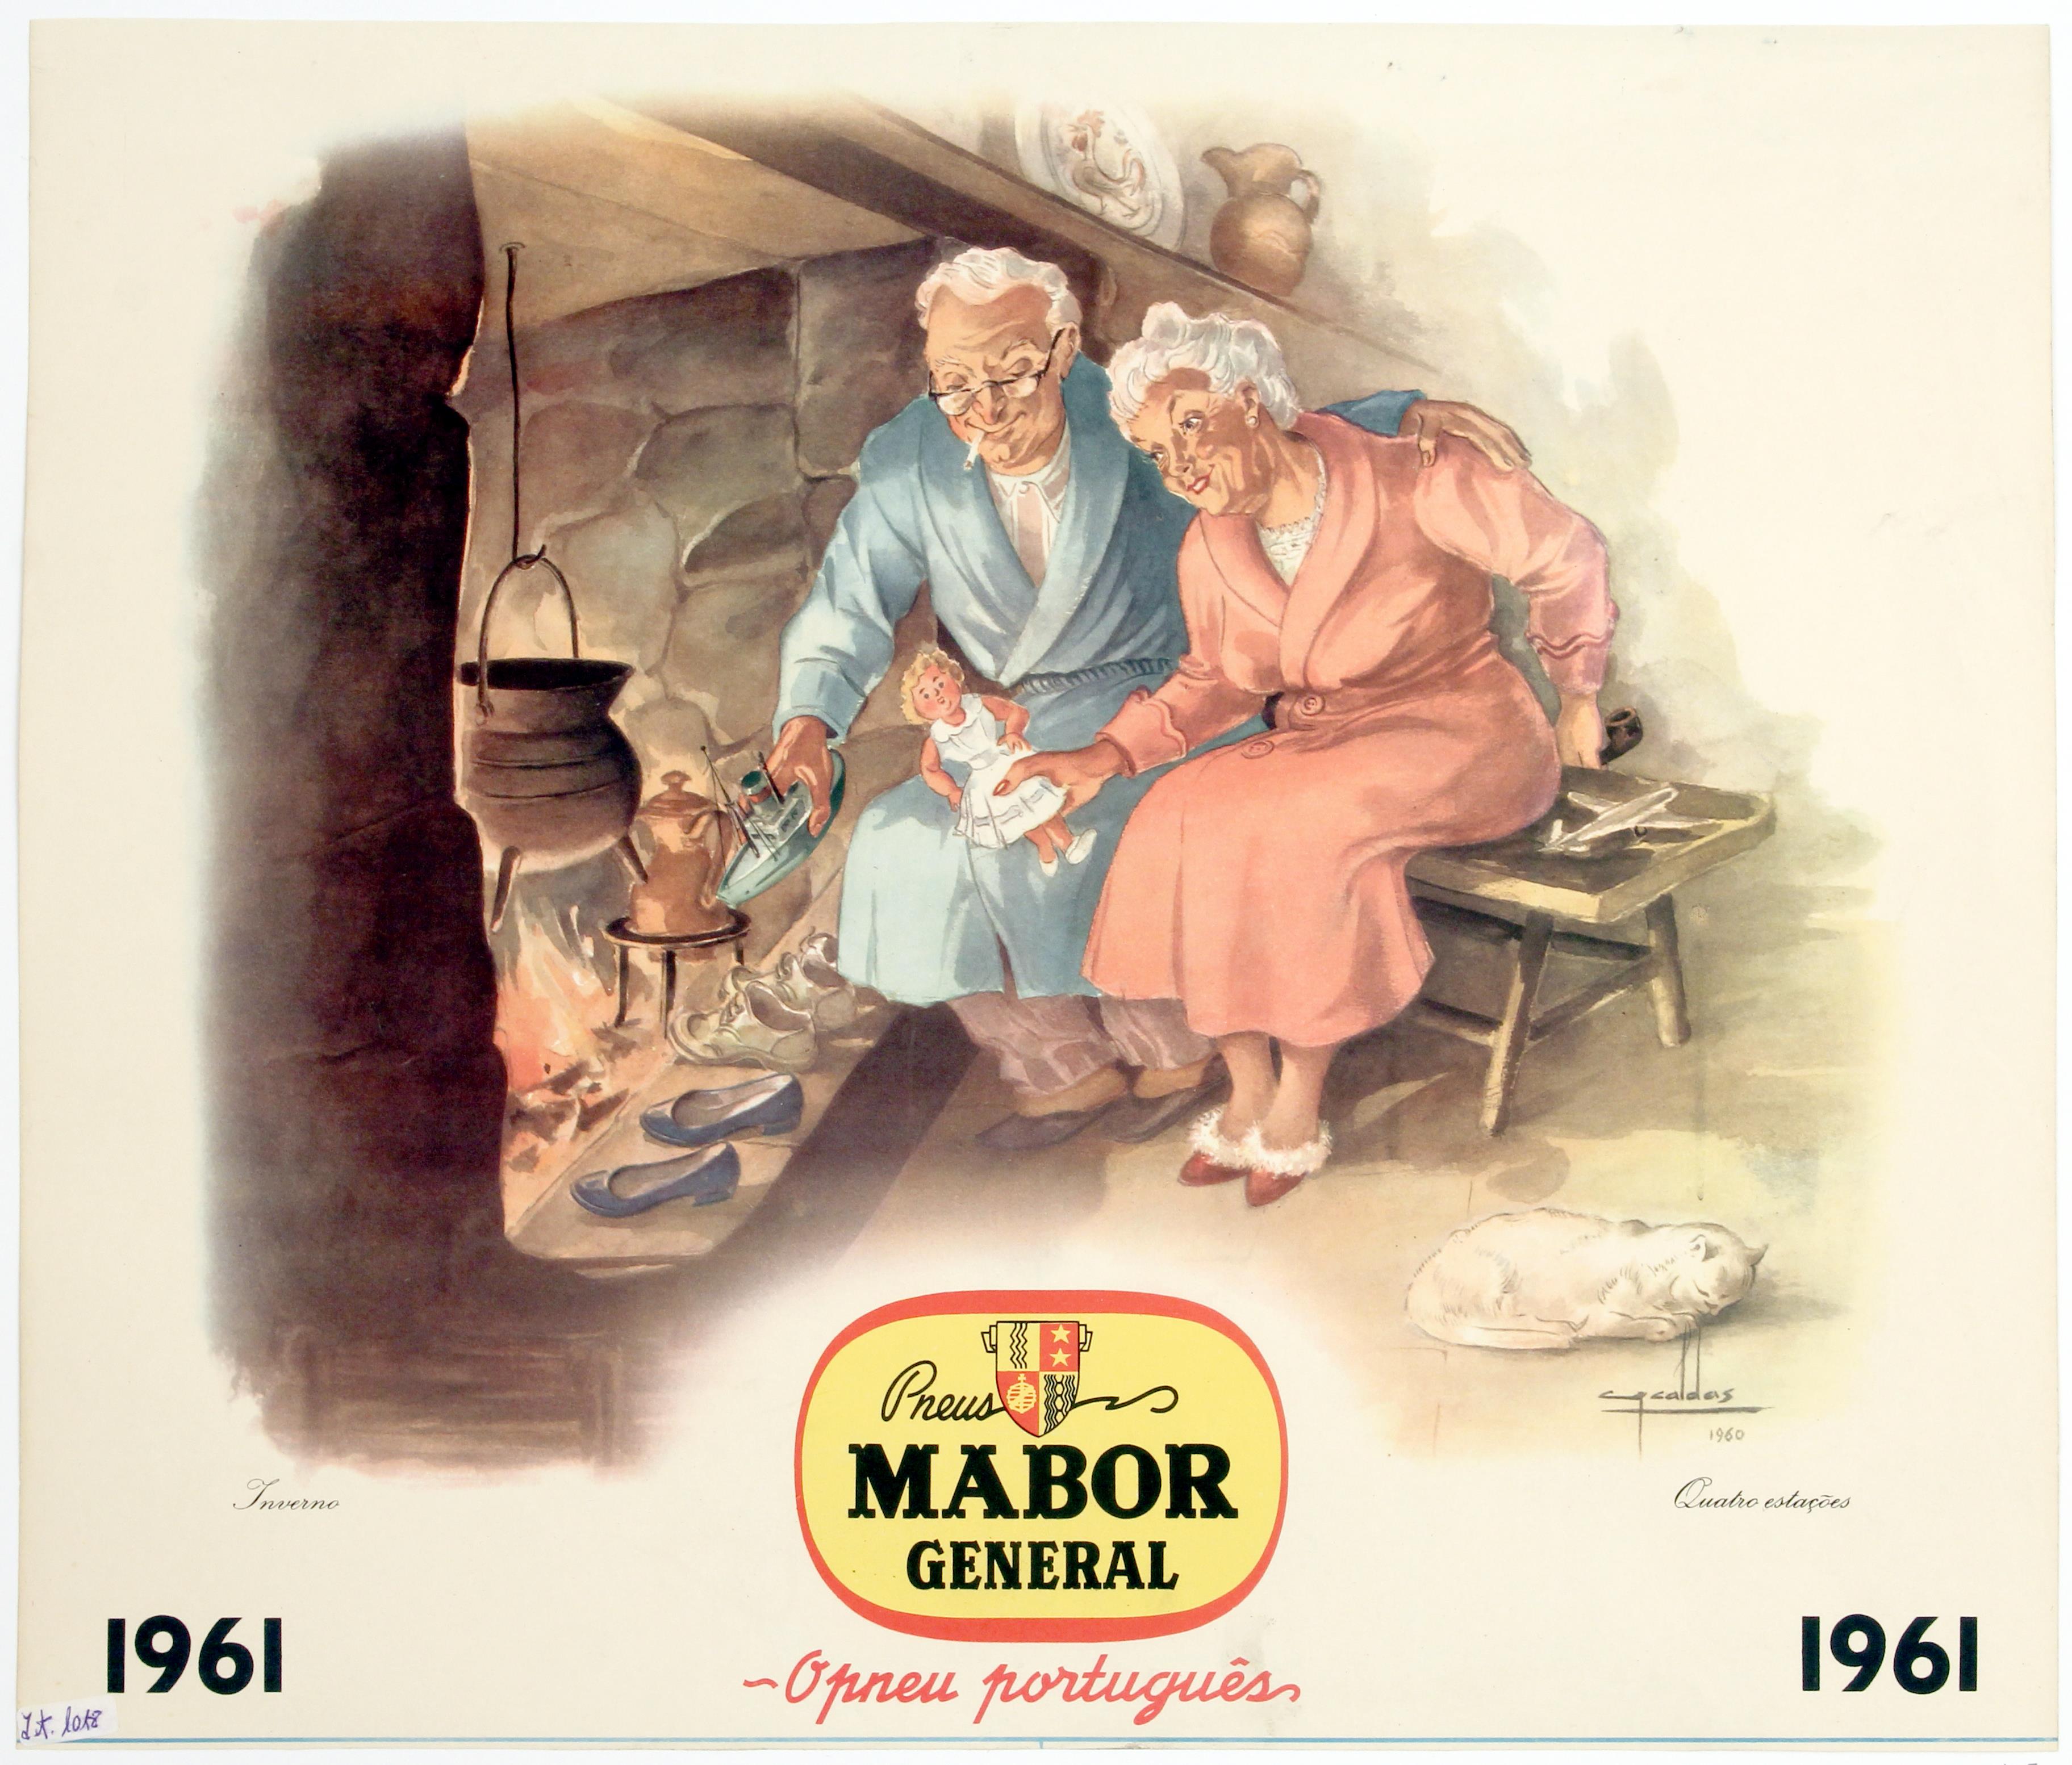 Cartaz de propaganda quatro estações : pneus Mabor General : o pneu português : Inverno